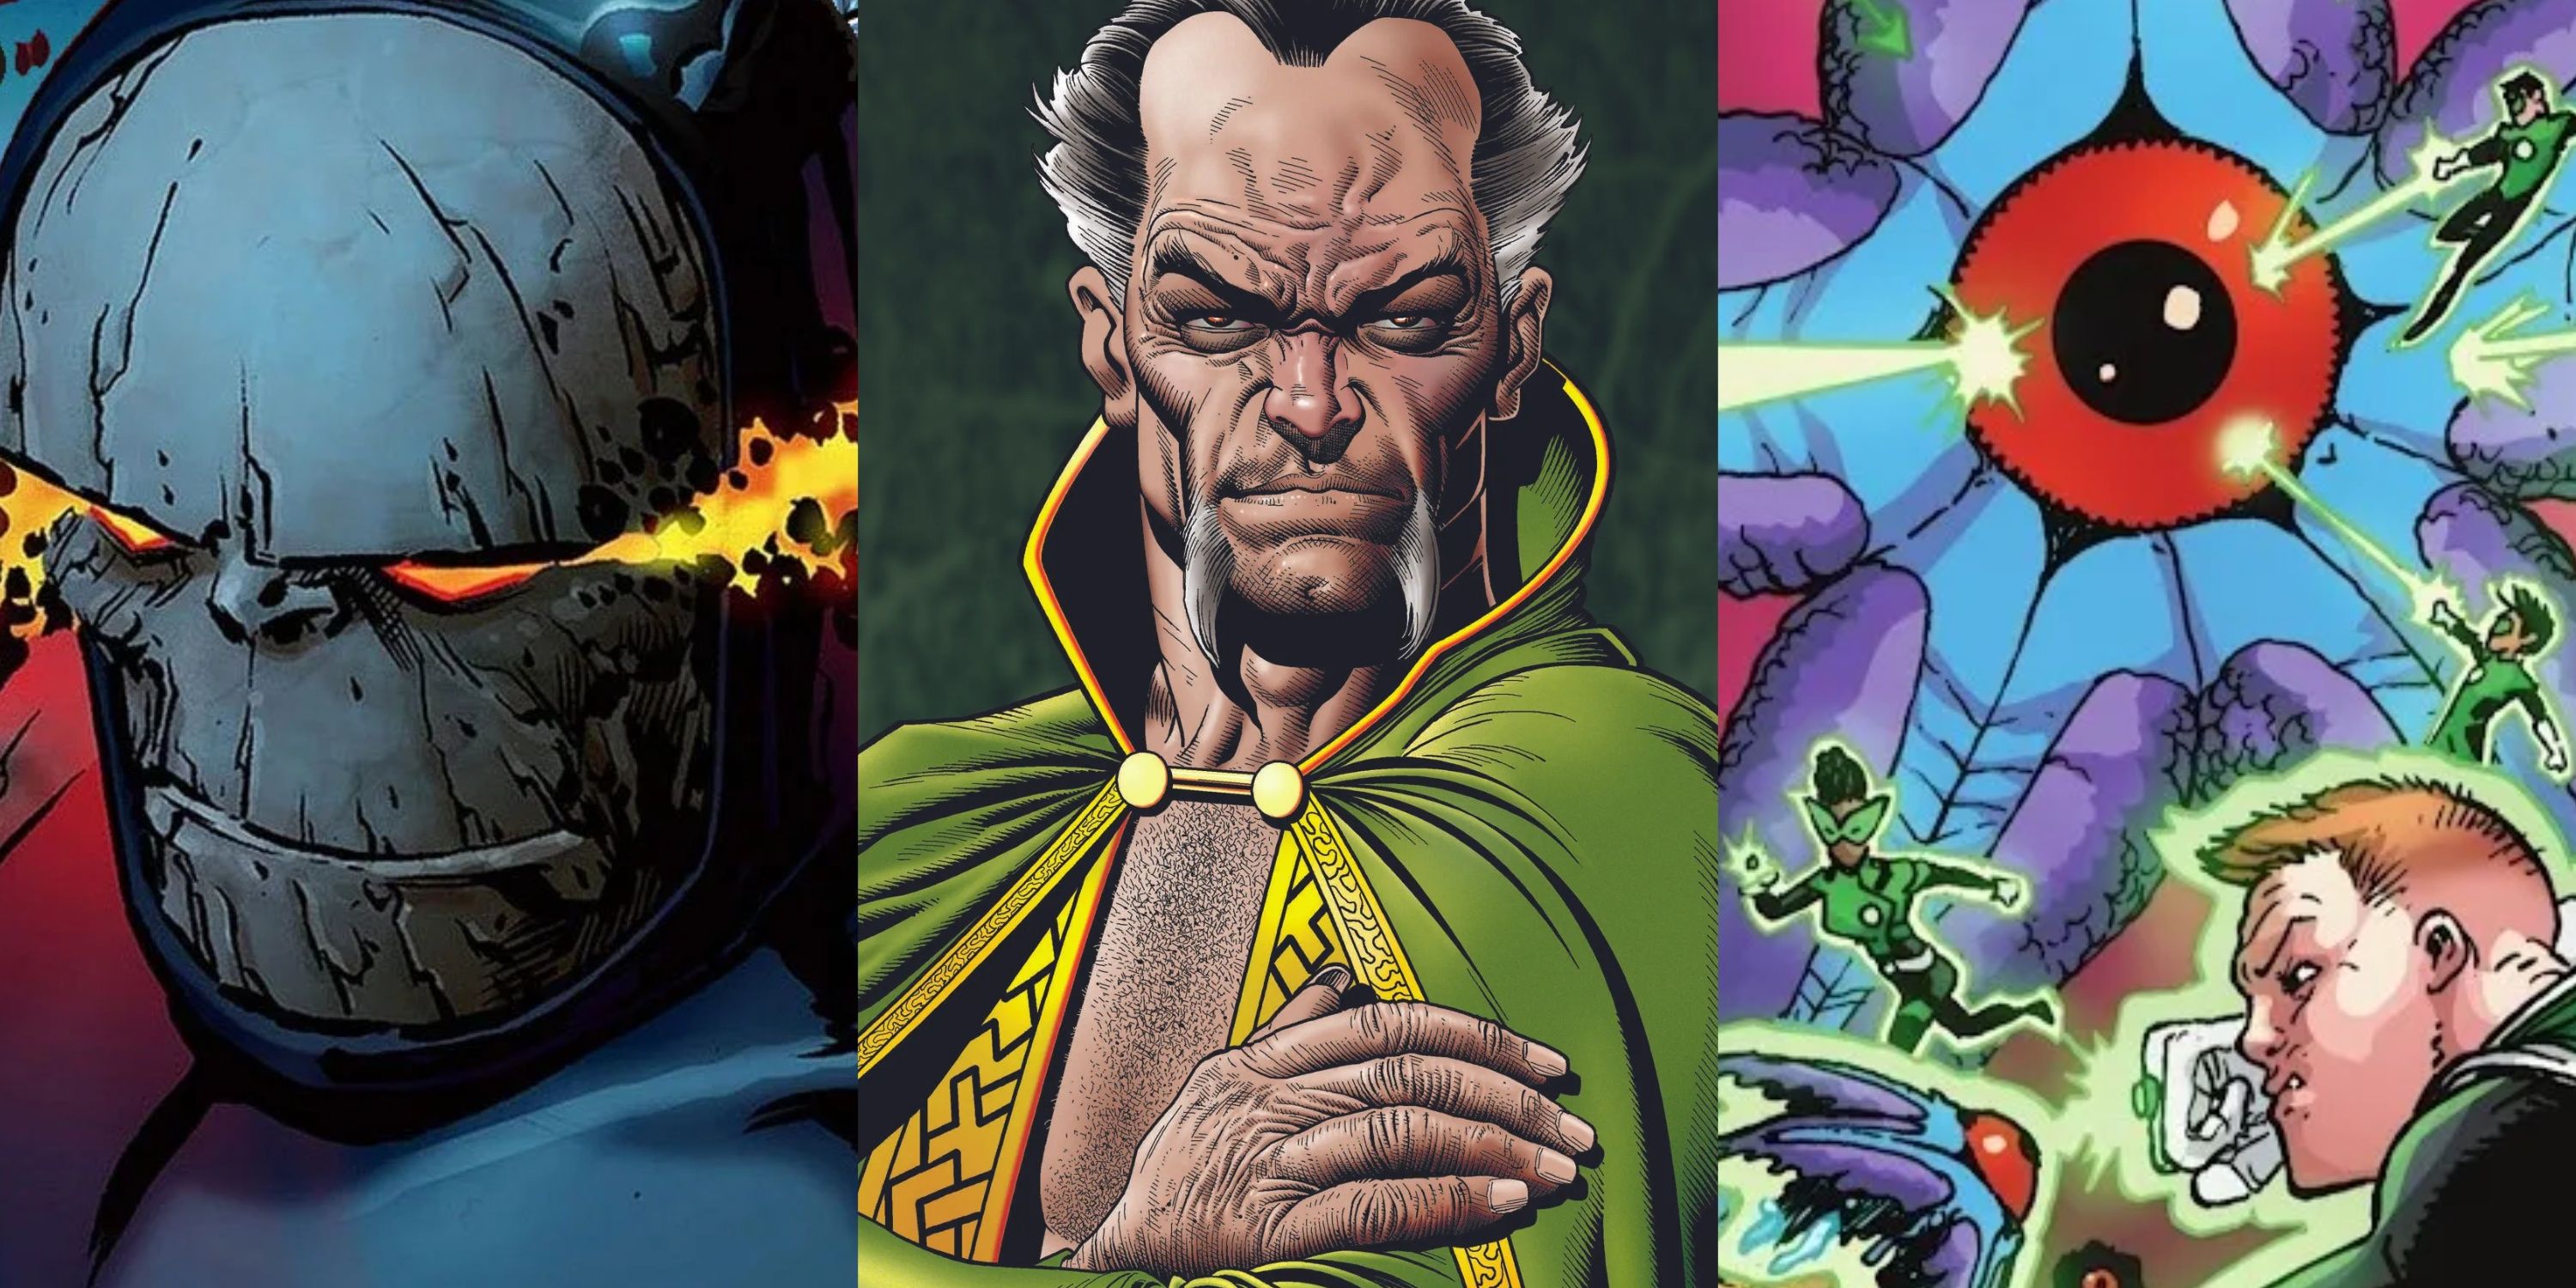 Split image Darkseid, Ra's al Ghul and Starro the Conqueror